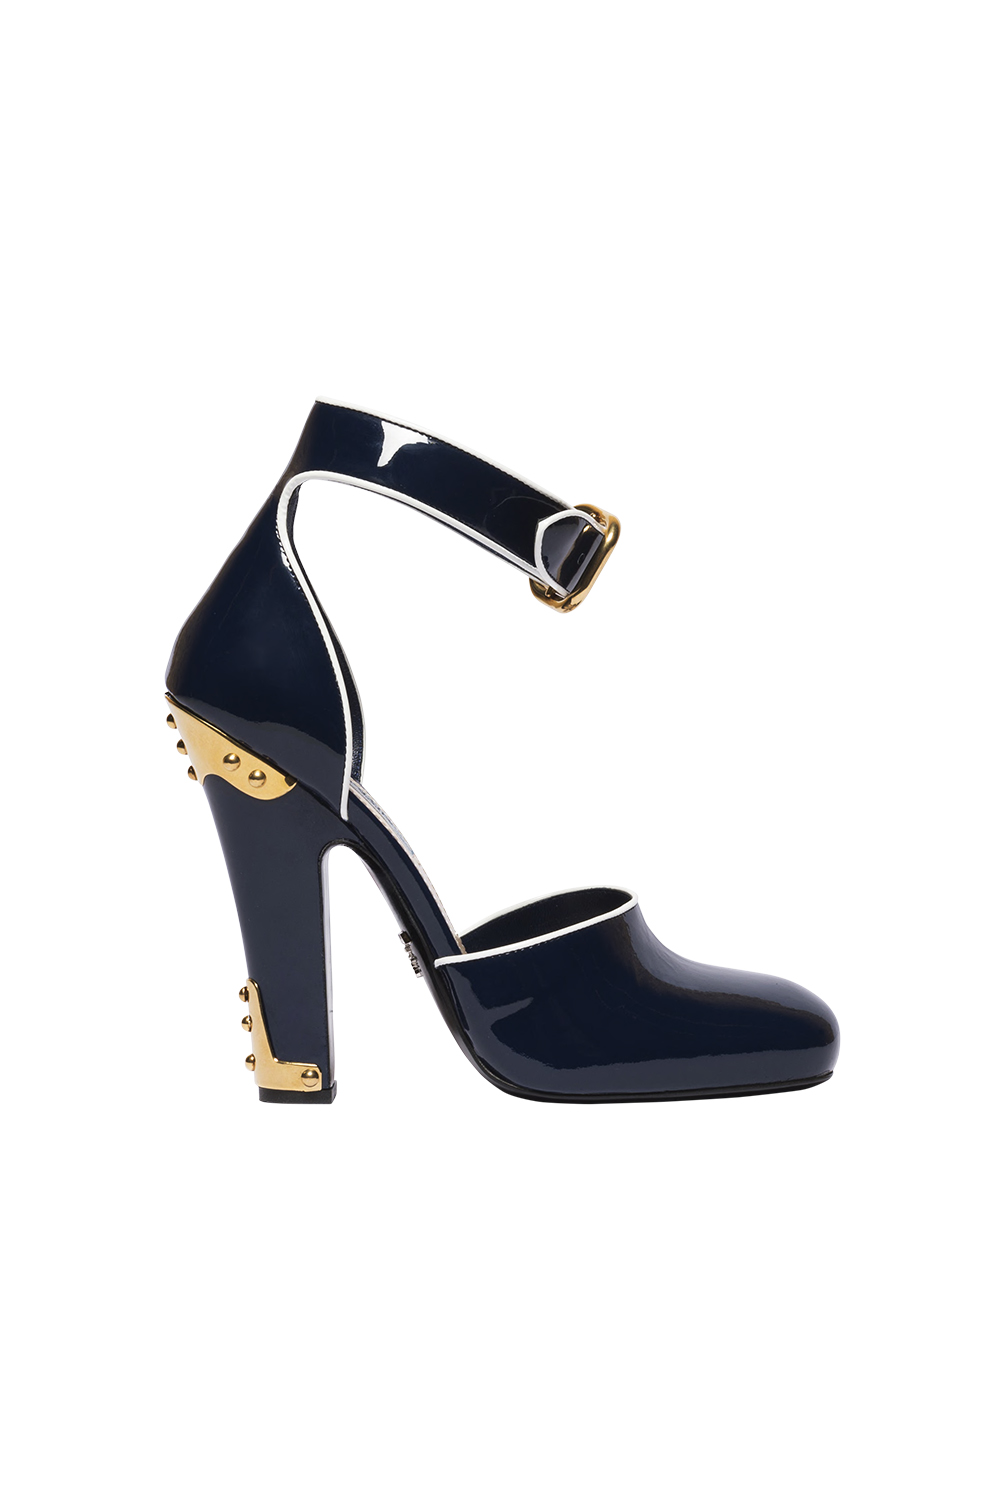 Heels, $1,580, by Prada.